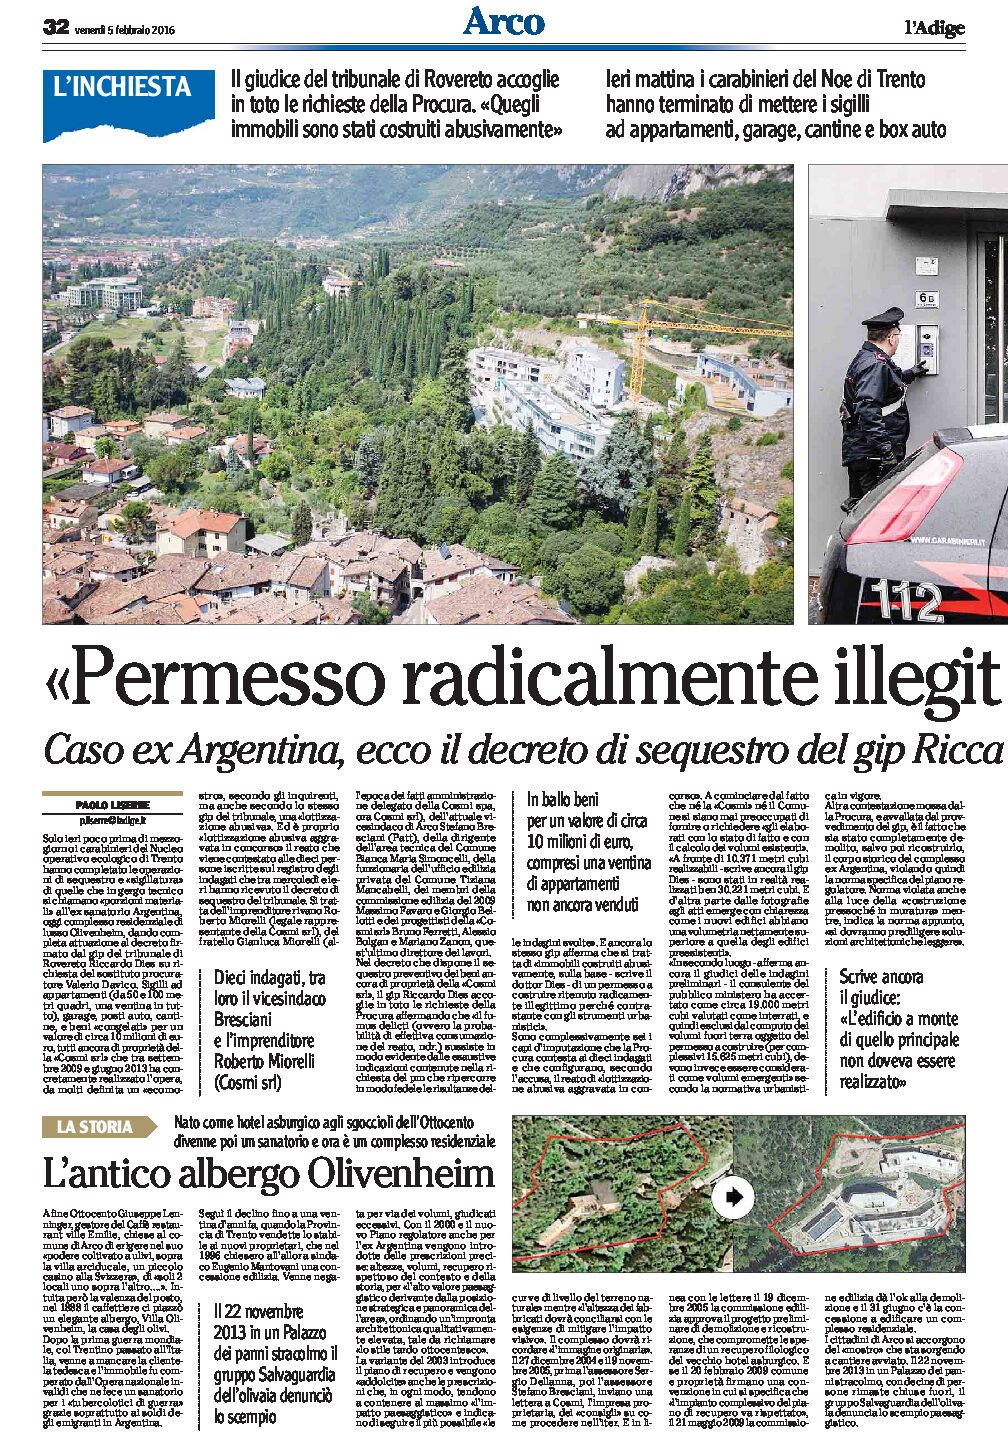 Arco, ex Argentina: Italia Nostra “violazioni inammissibili. Ripensare l’urbanistica”